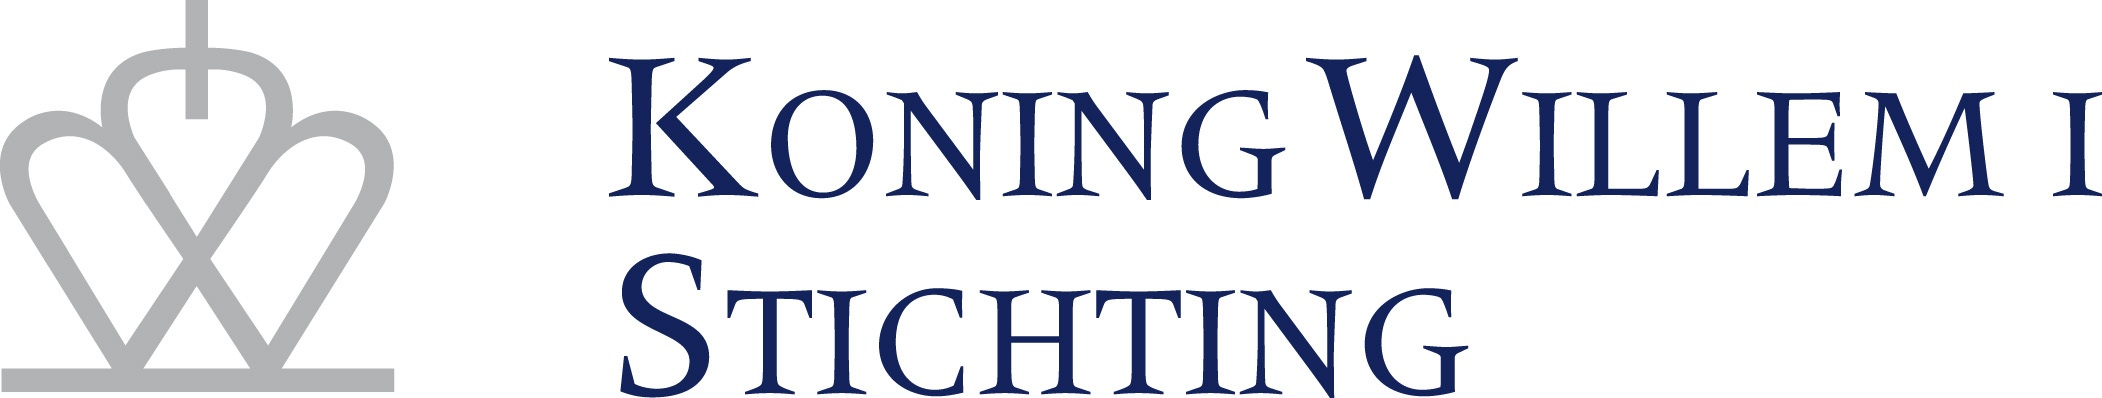 Logo Koning Willem 1 Stiftung